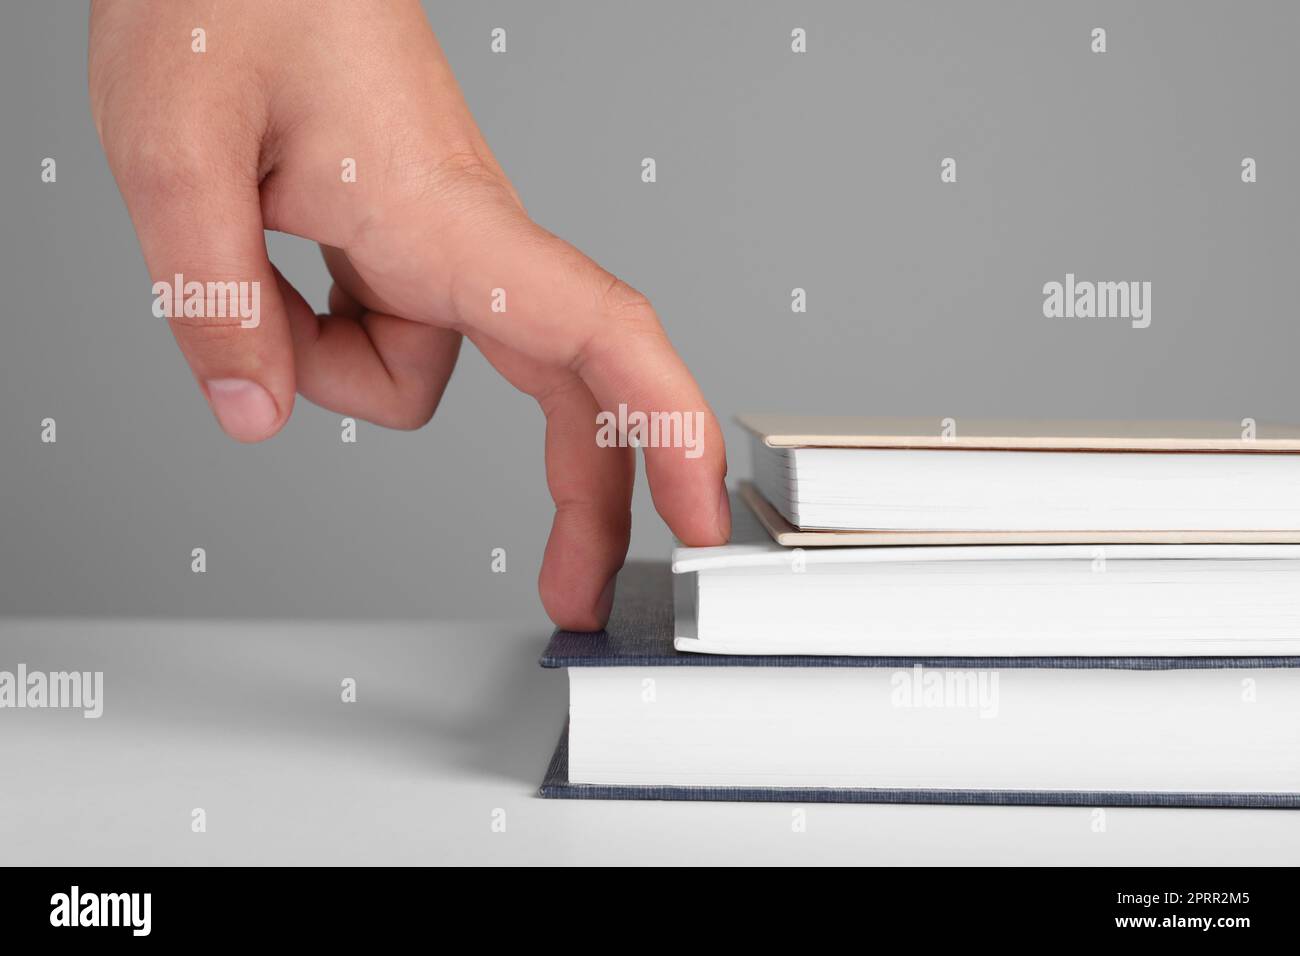 Femme imitant monter sur des livres avec ses doigts contre fond gris, gros plan Banque D'Images